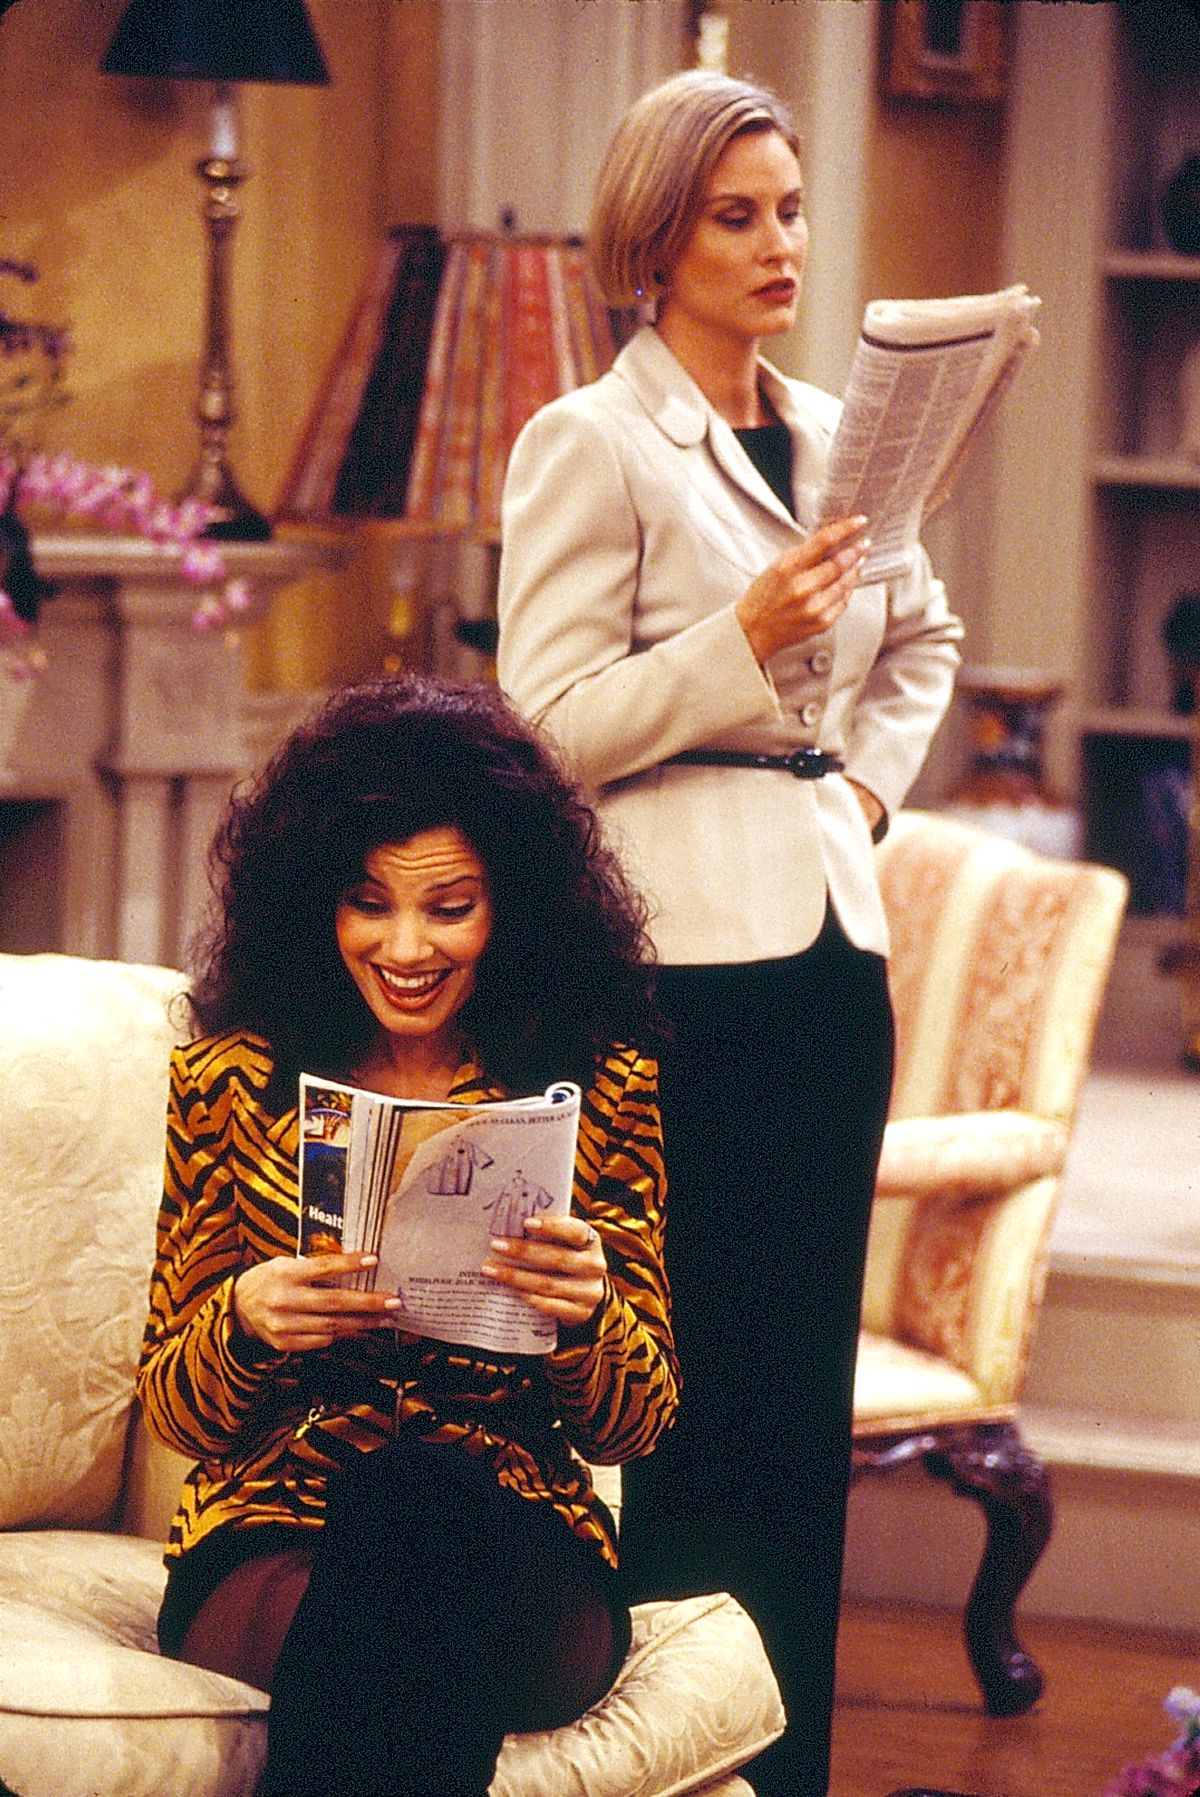 En el set de The Nanny, Fran Drescher (como Fran Fine) se sienta en el sofá y lee una revista, mientras que Lauren Lane (como CC Babcock) se para y sostiene un periódico.